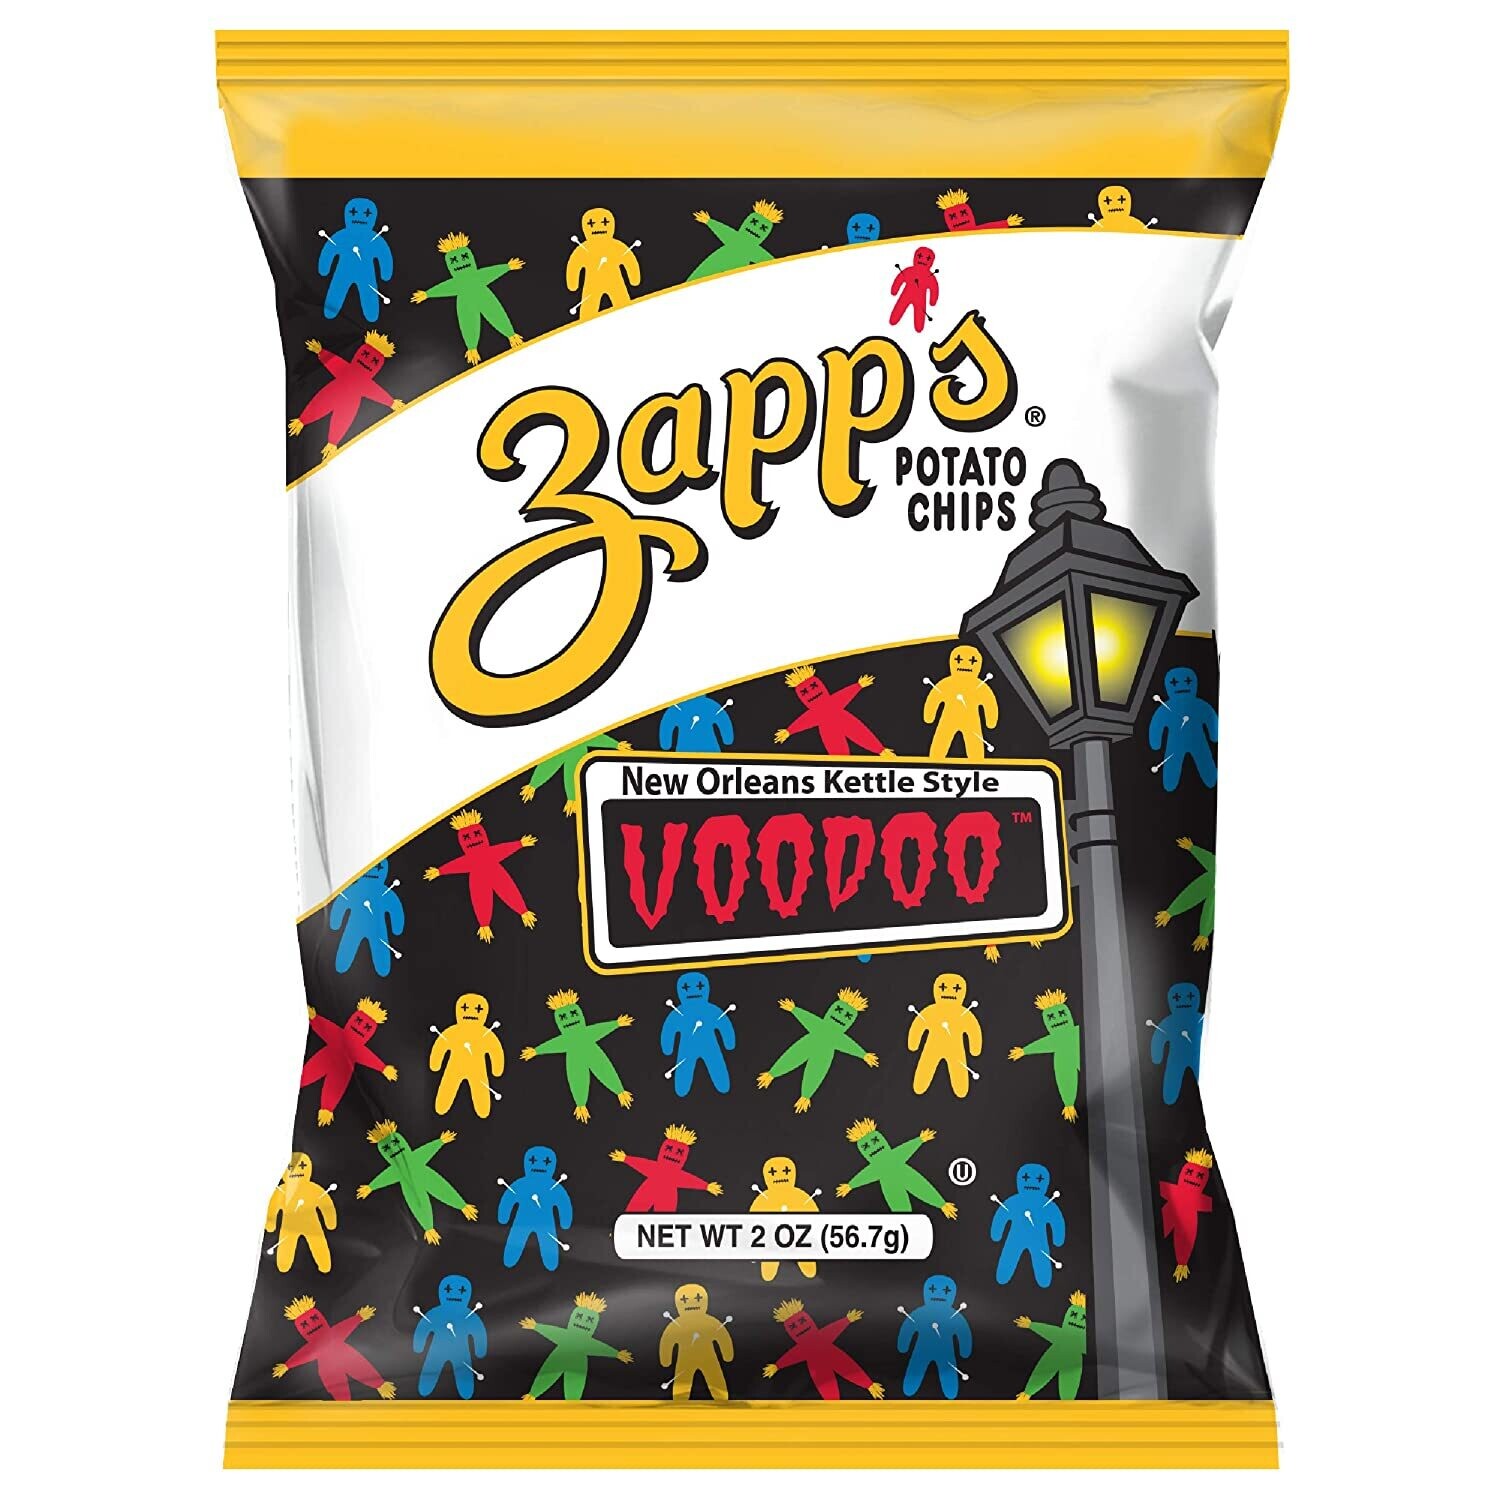 Zapps voodoo chips